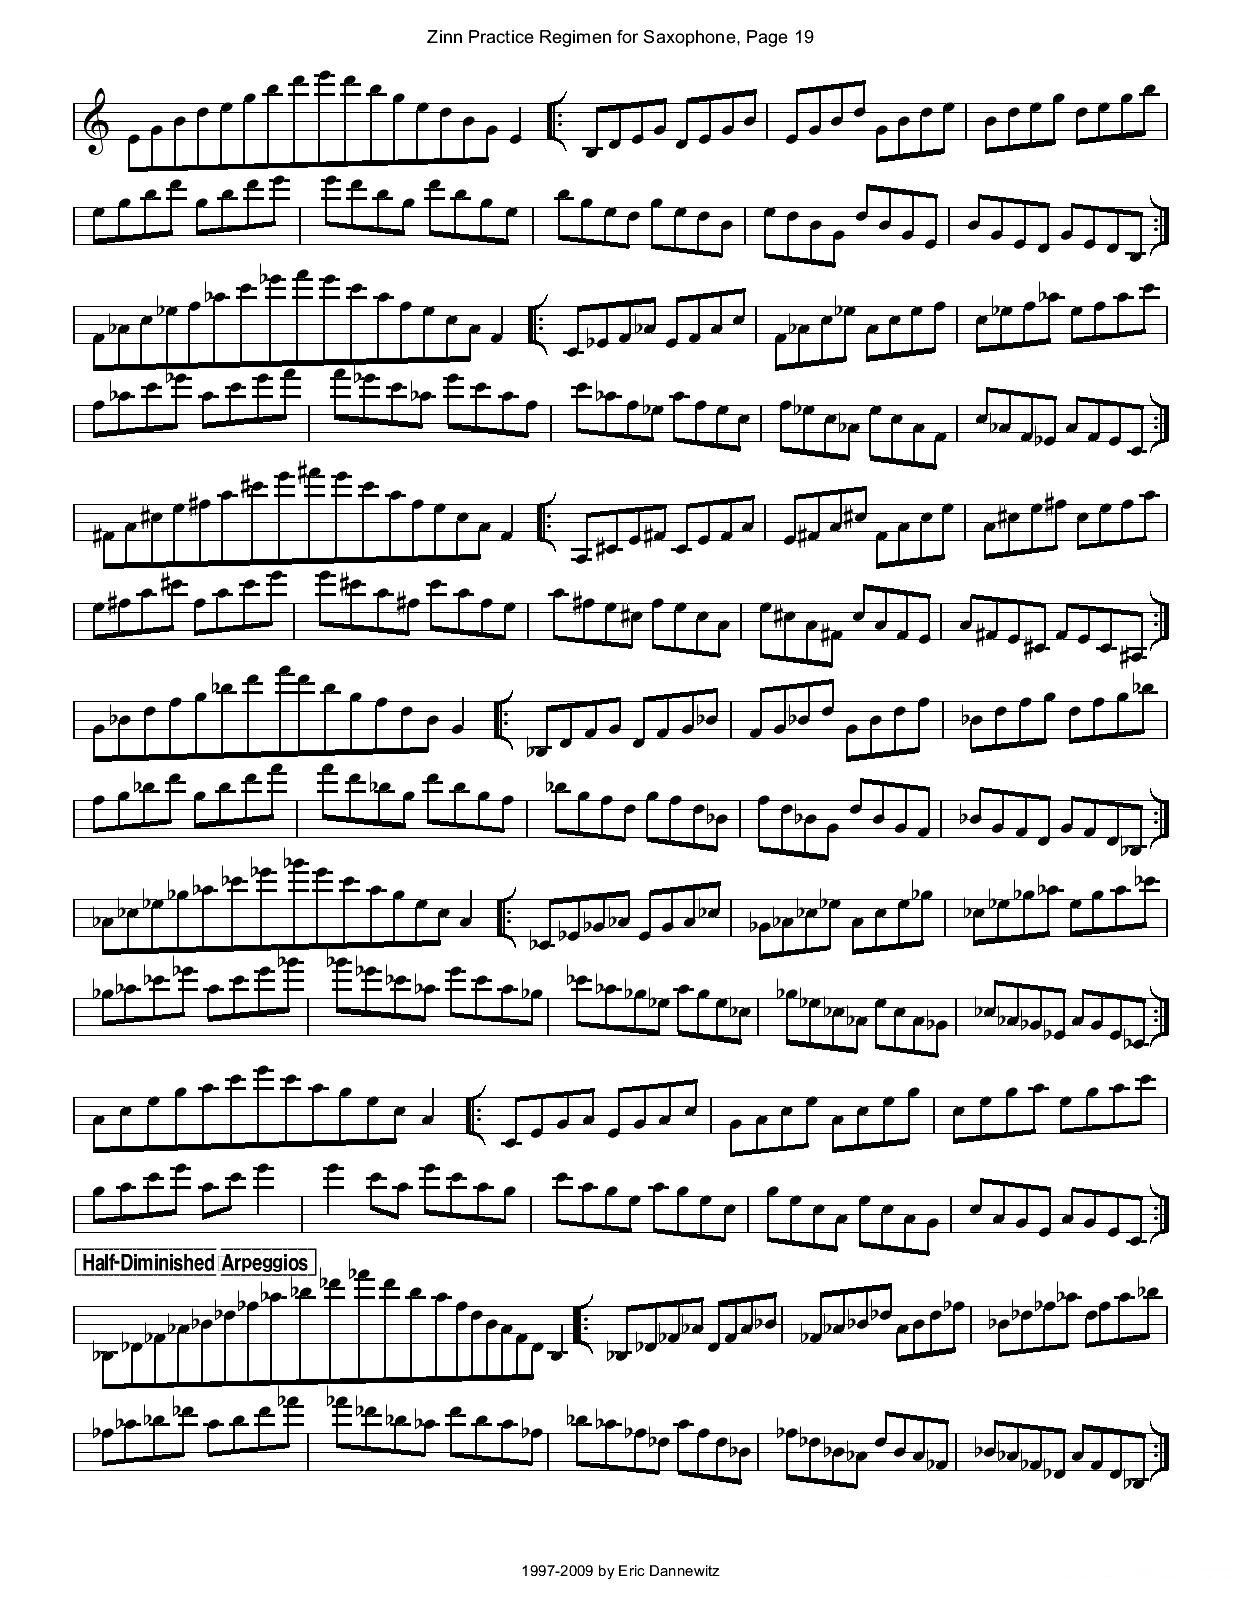 ZinnRegimenSax2009练习曲萨克斯曲谱（图22）